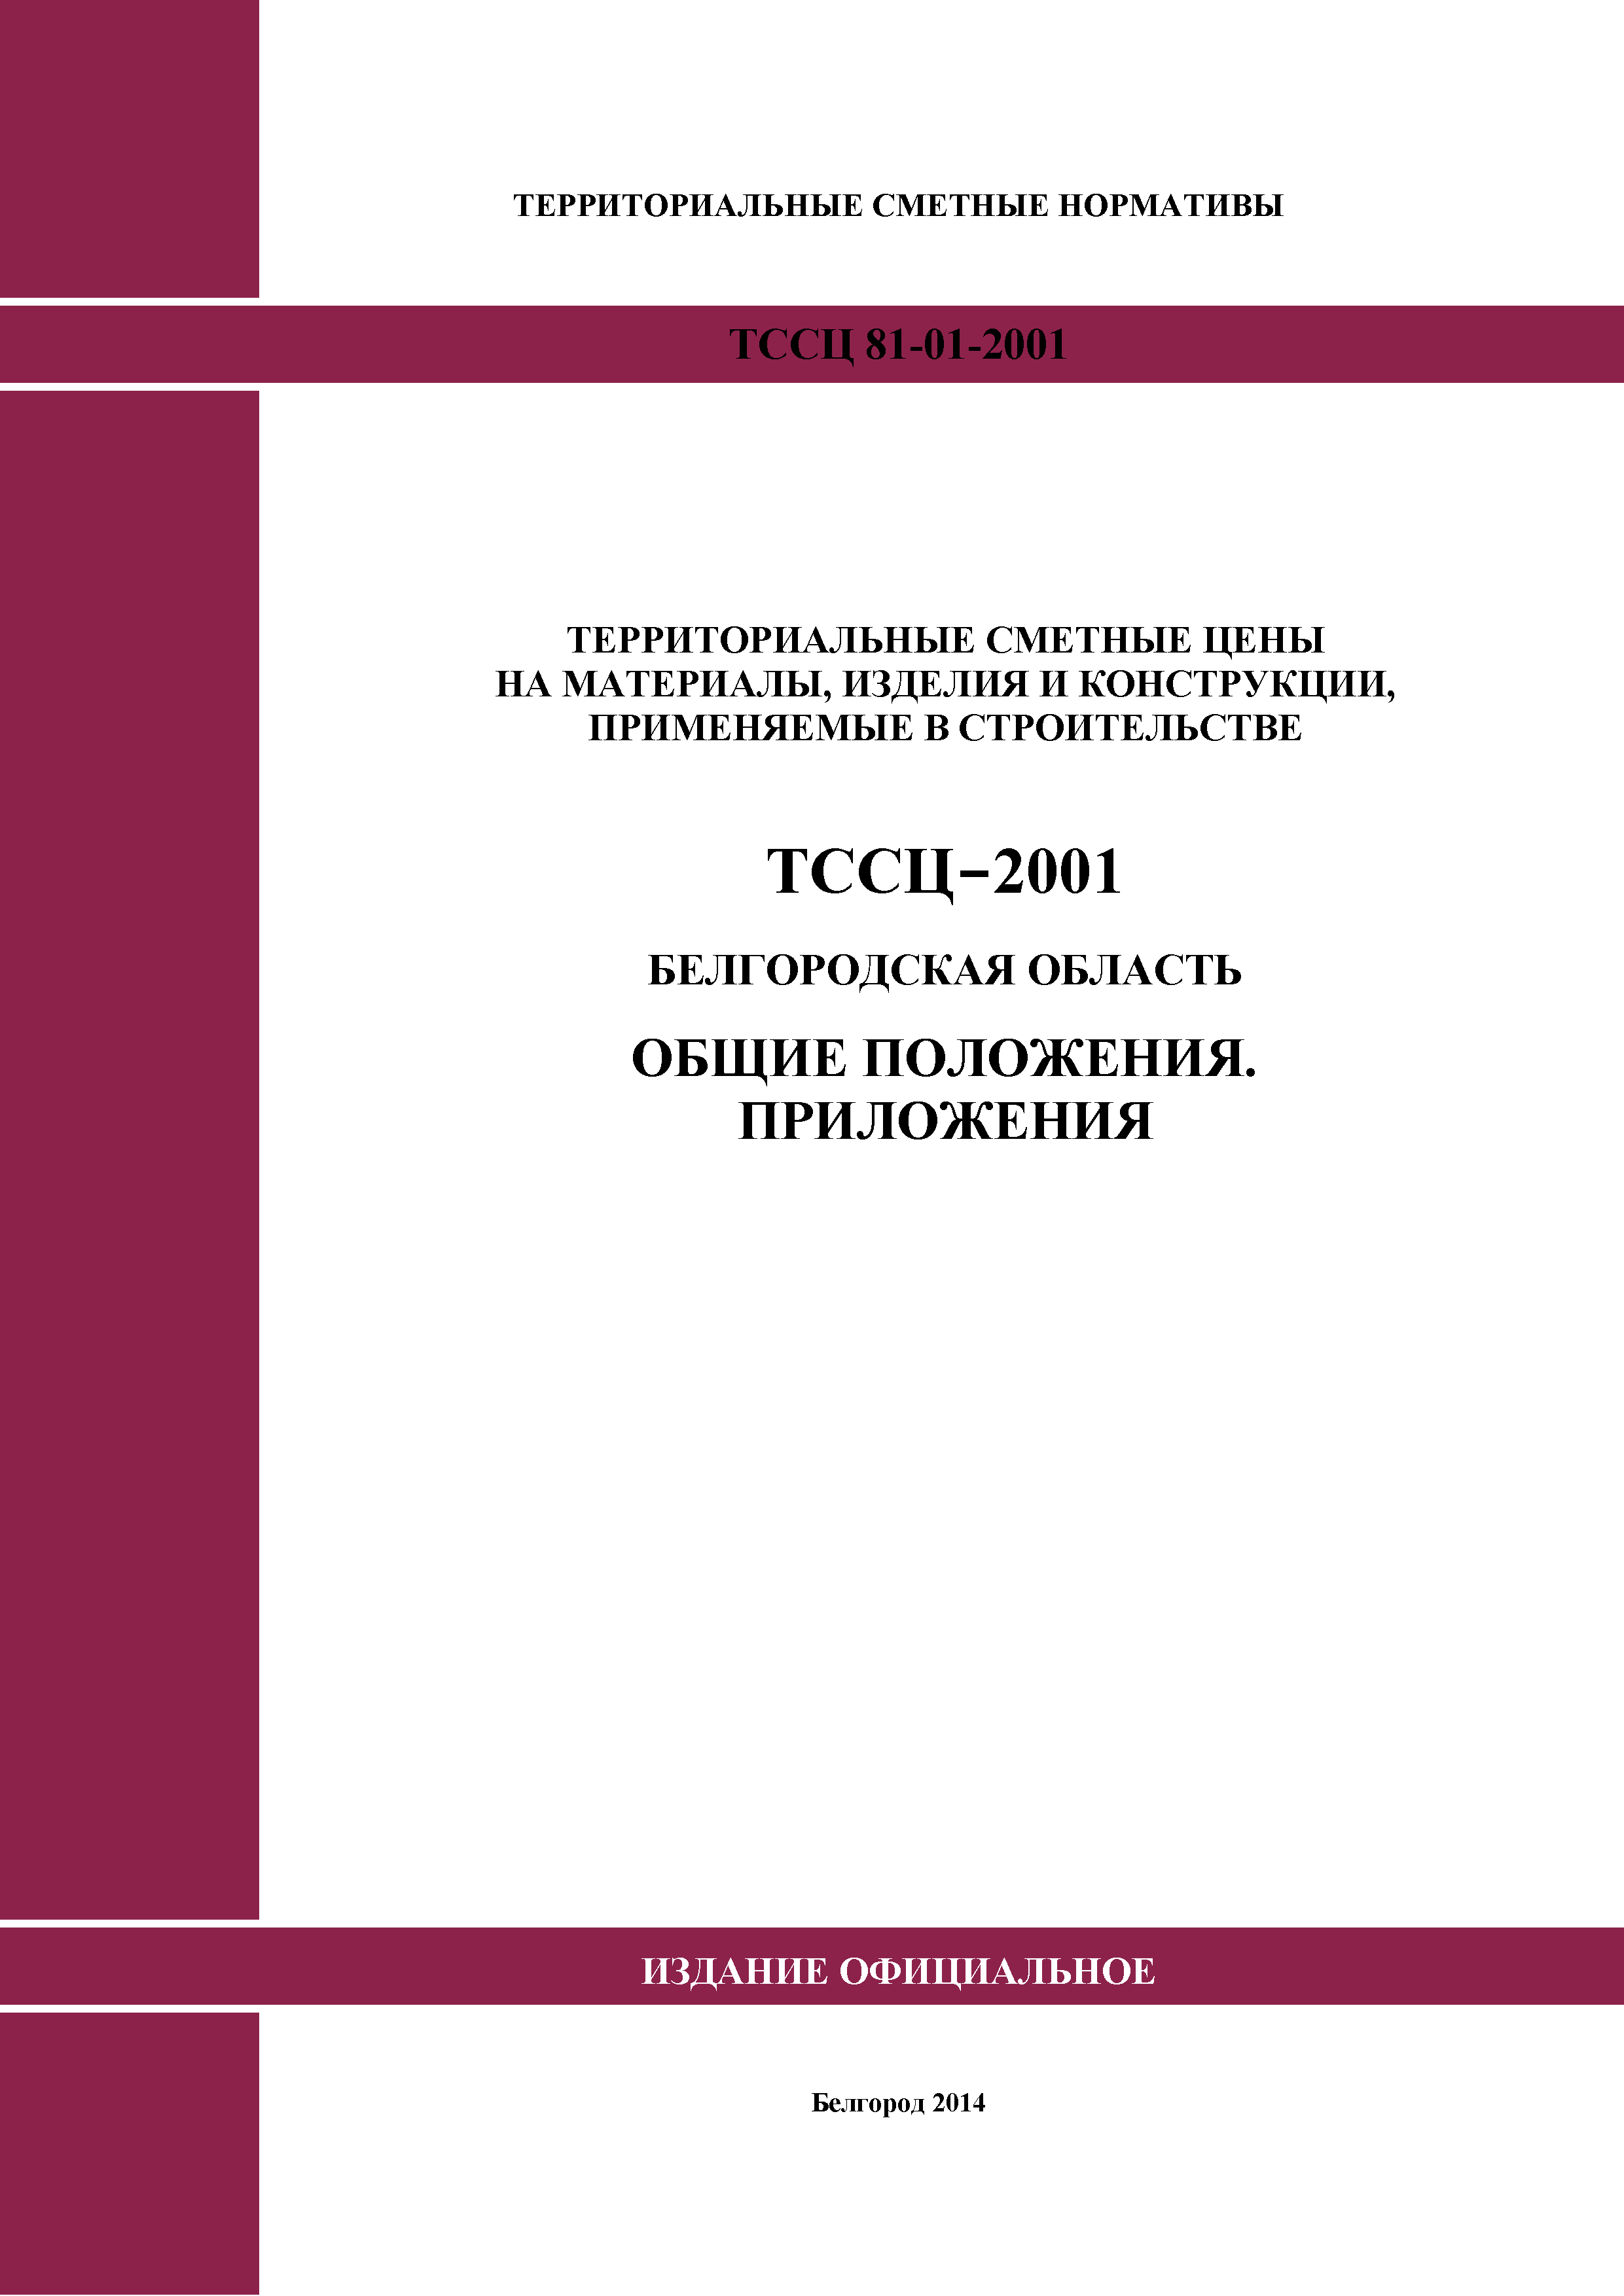 ТССЦ Белгородская область 2001